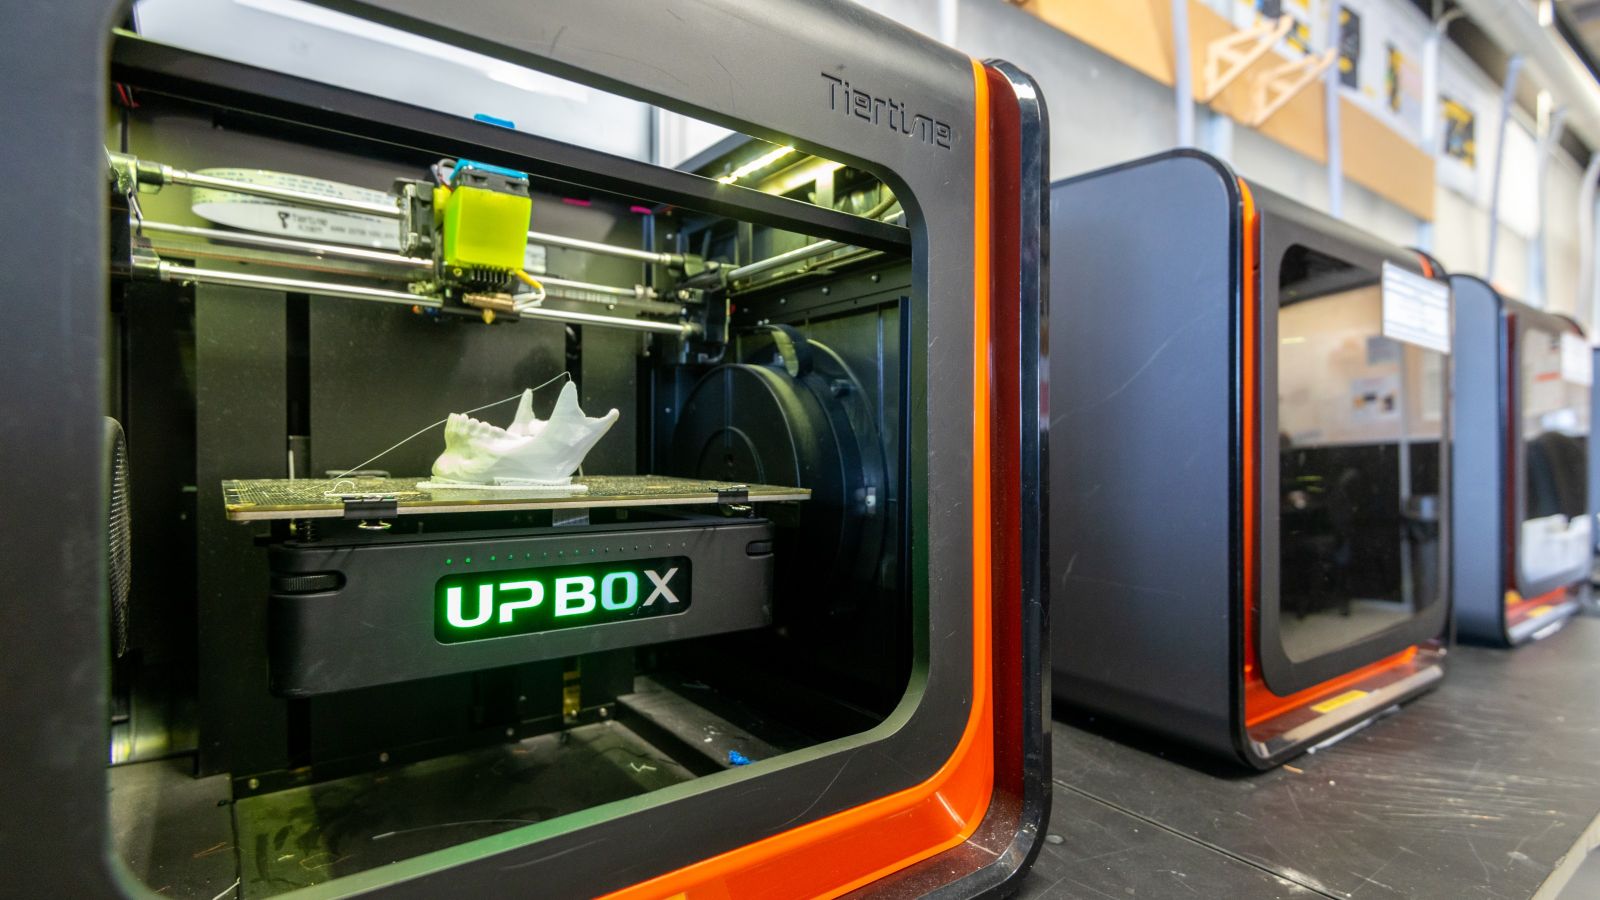 UP box desktop 3D printer in use